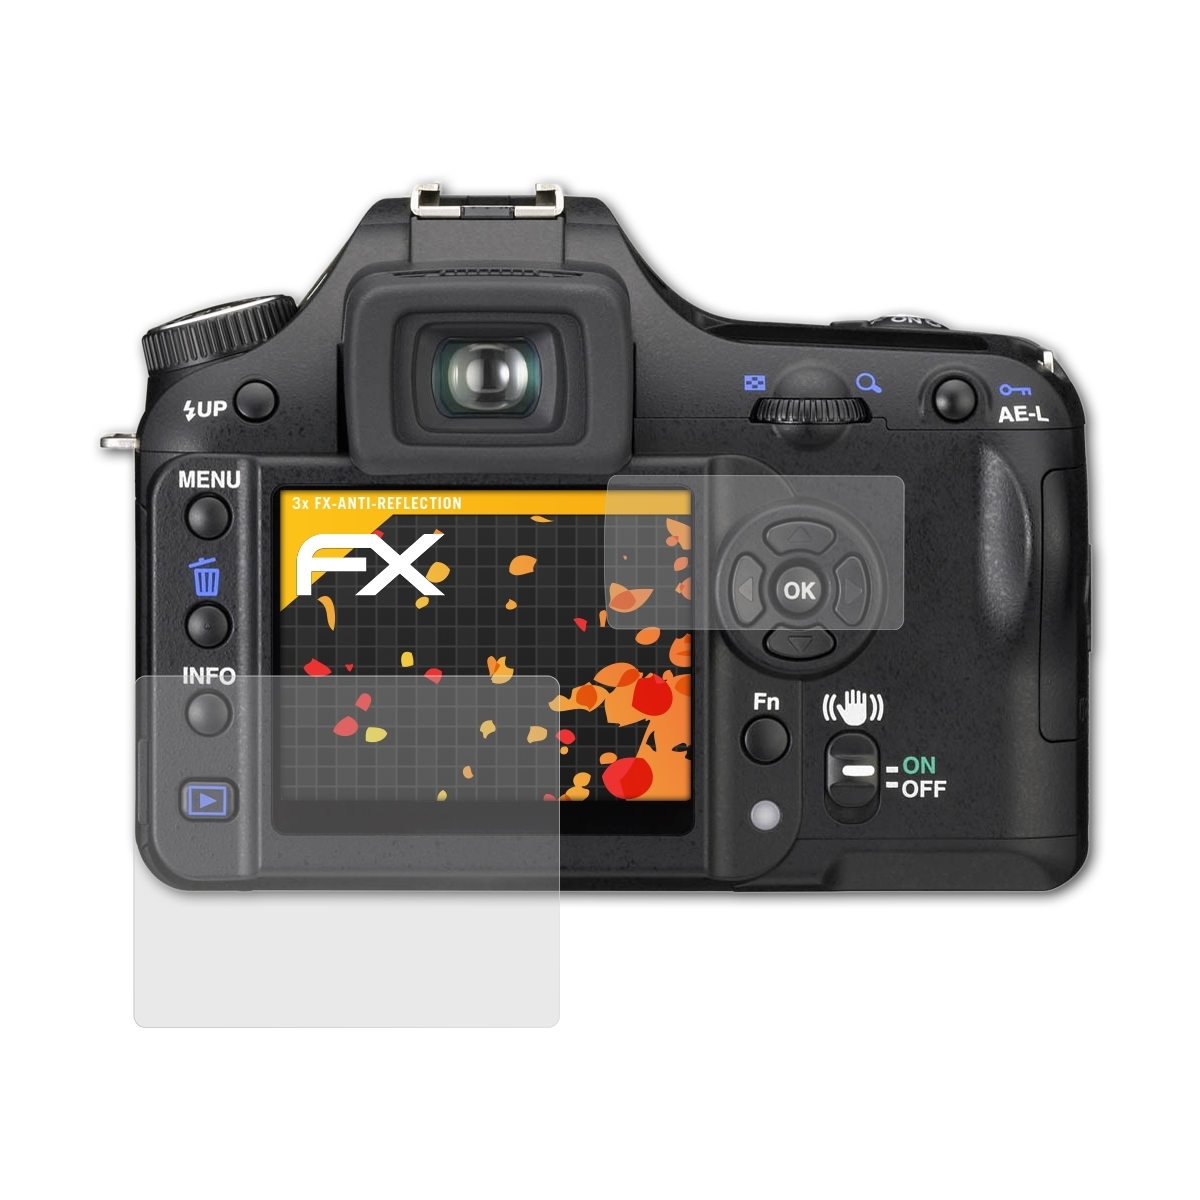 ATFOLIX 3x Super) Pentax K100D FX-Antireflex Displayschutz(für